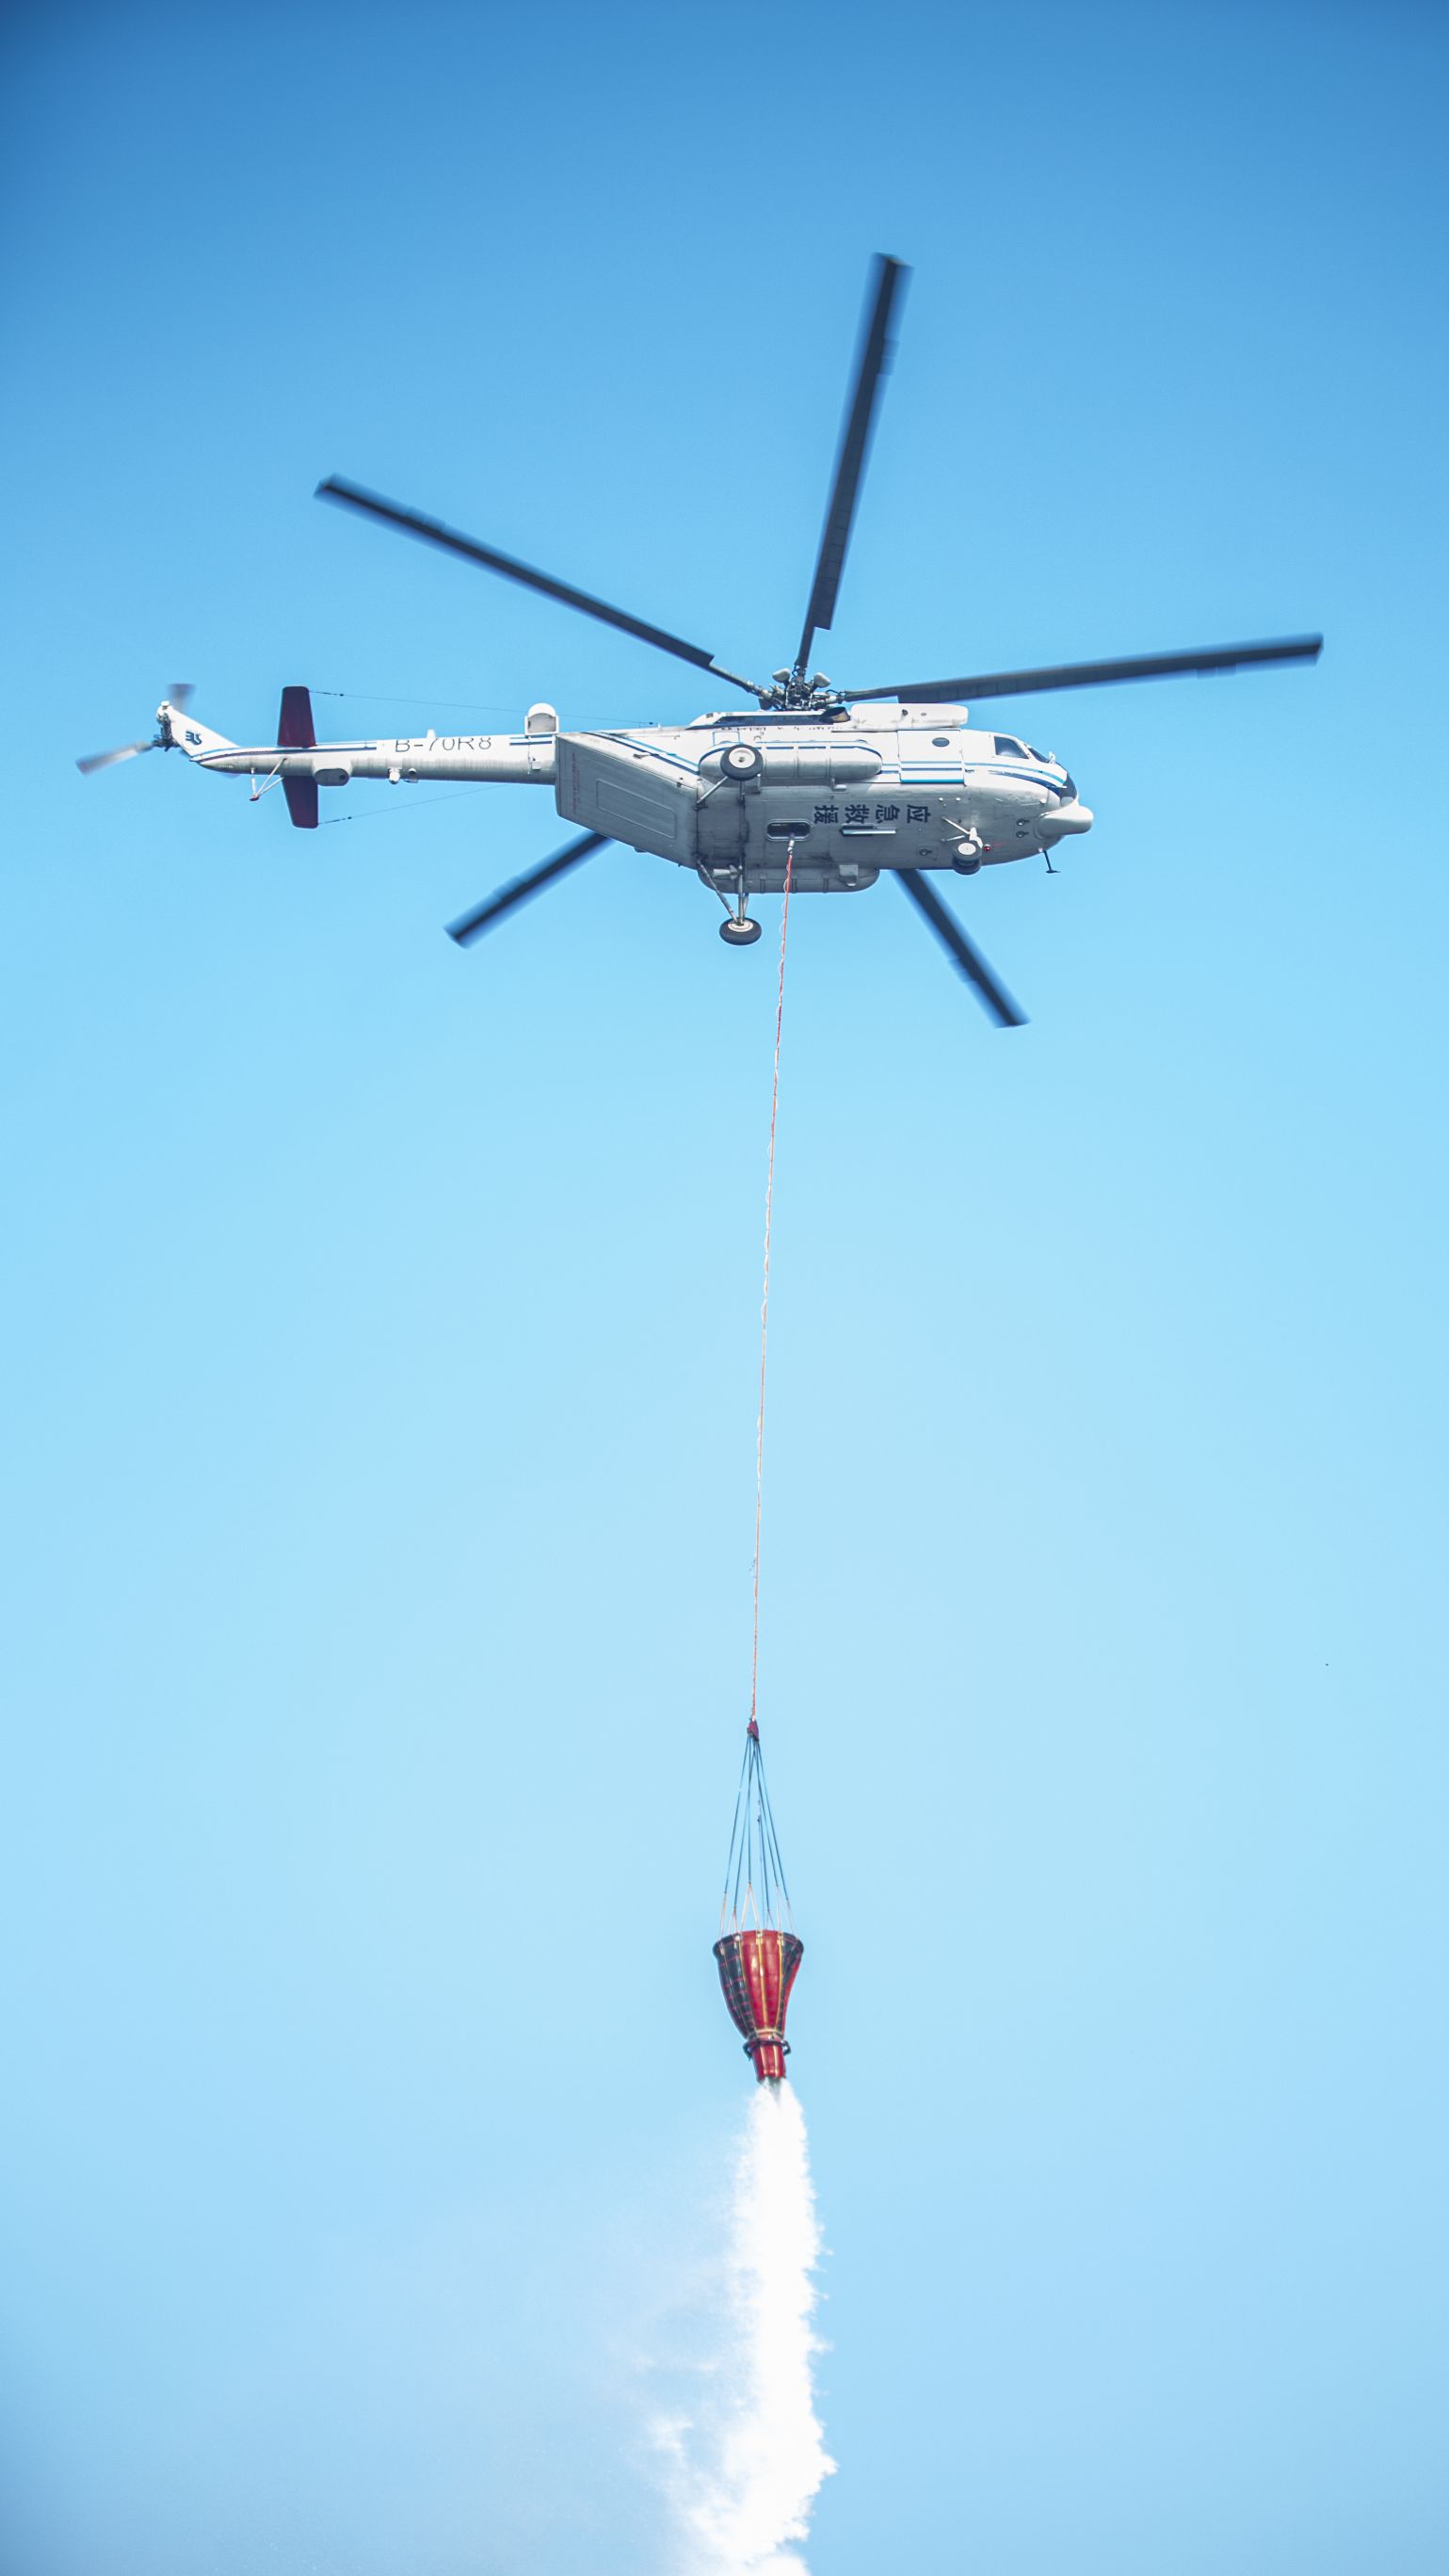 演練直升機吊桶作業科目。成都市應急局供圖